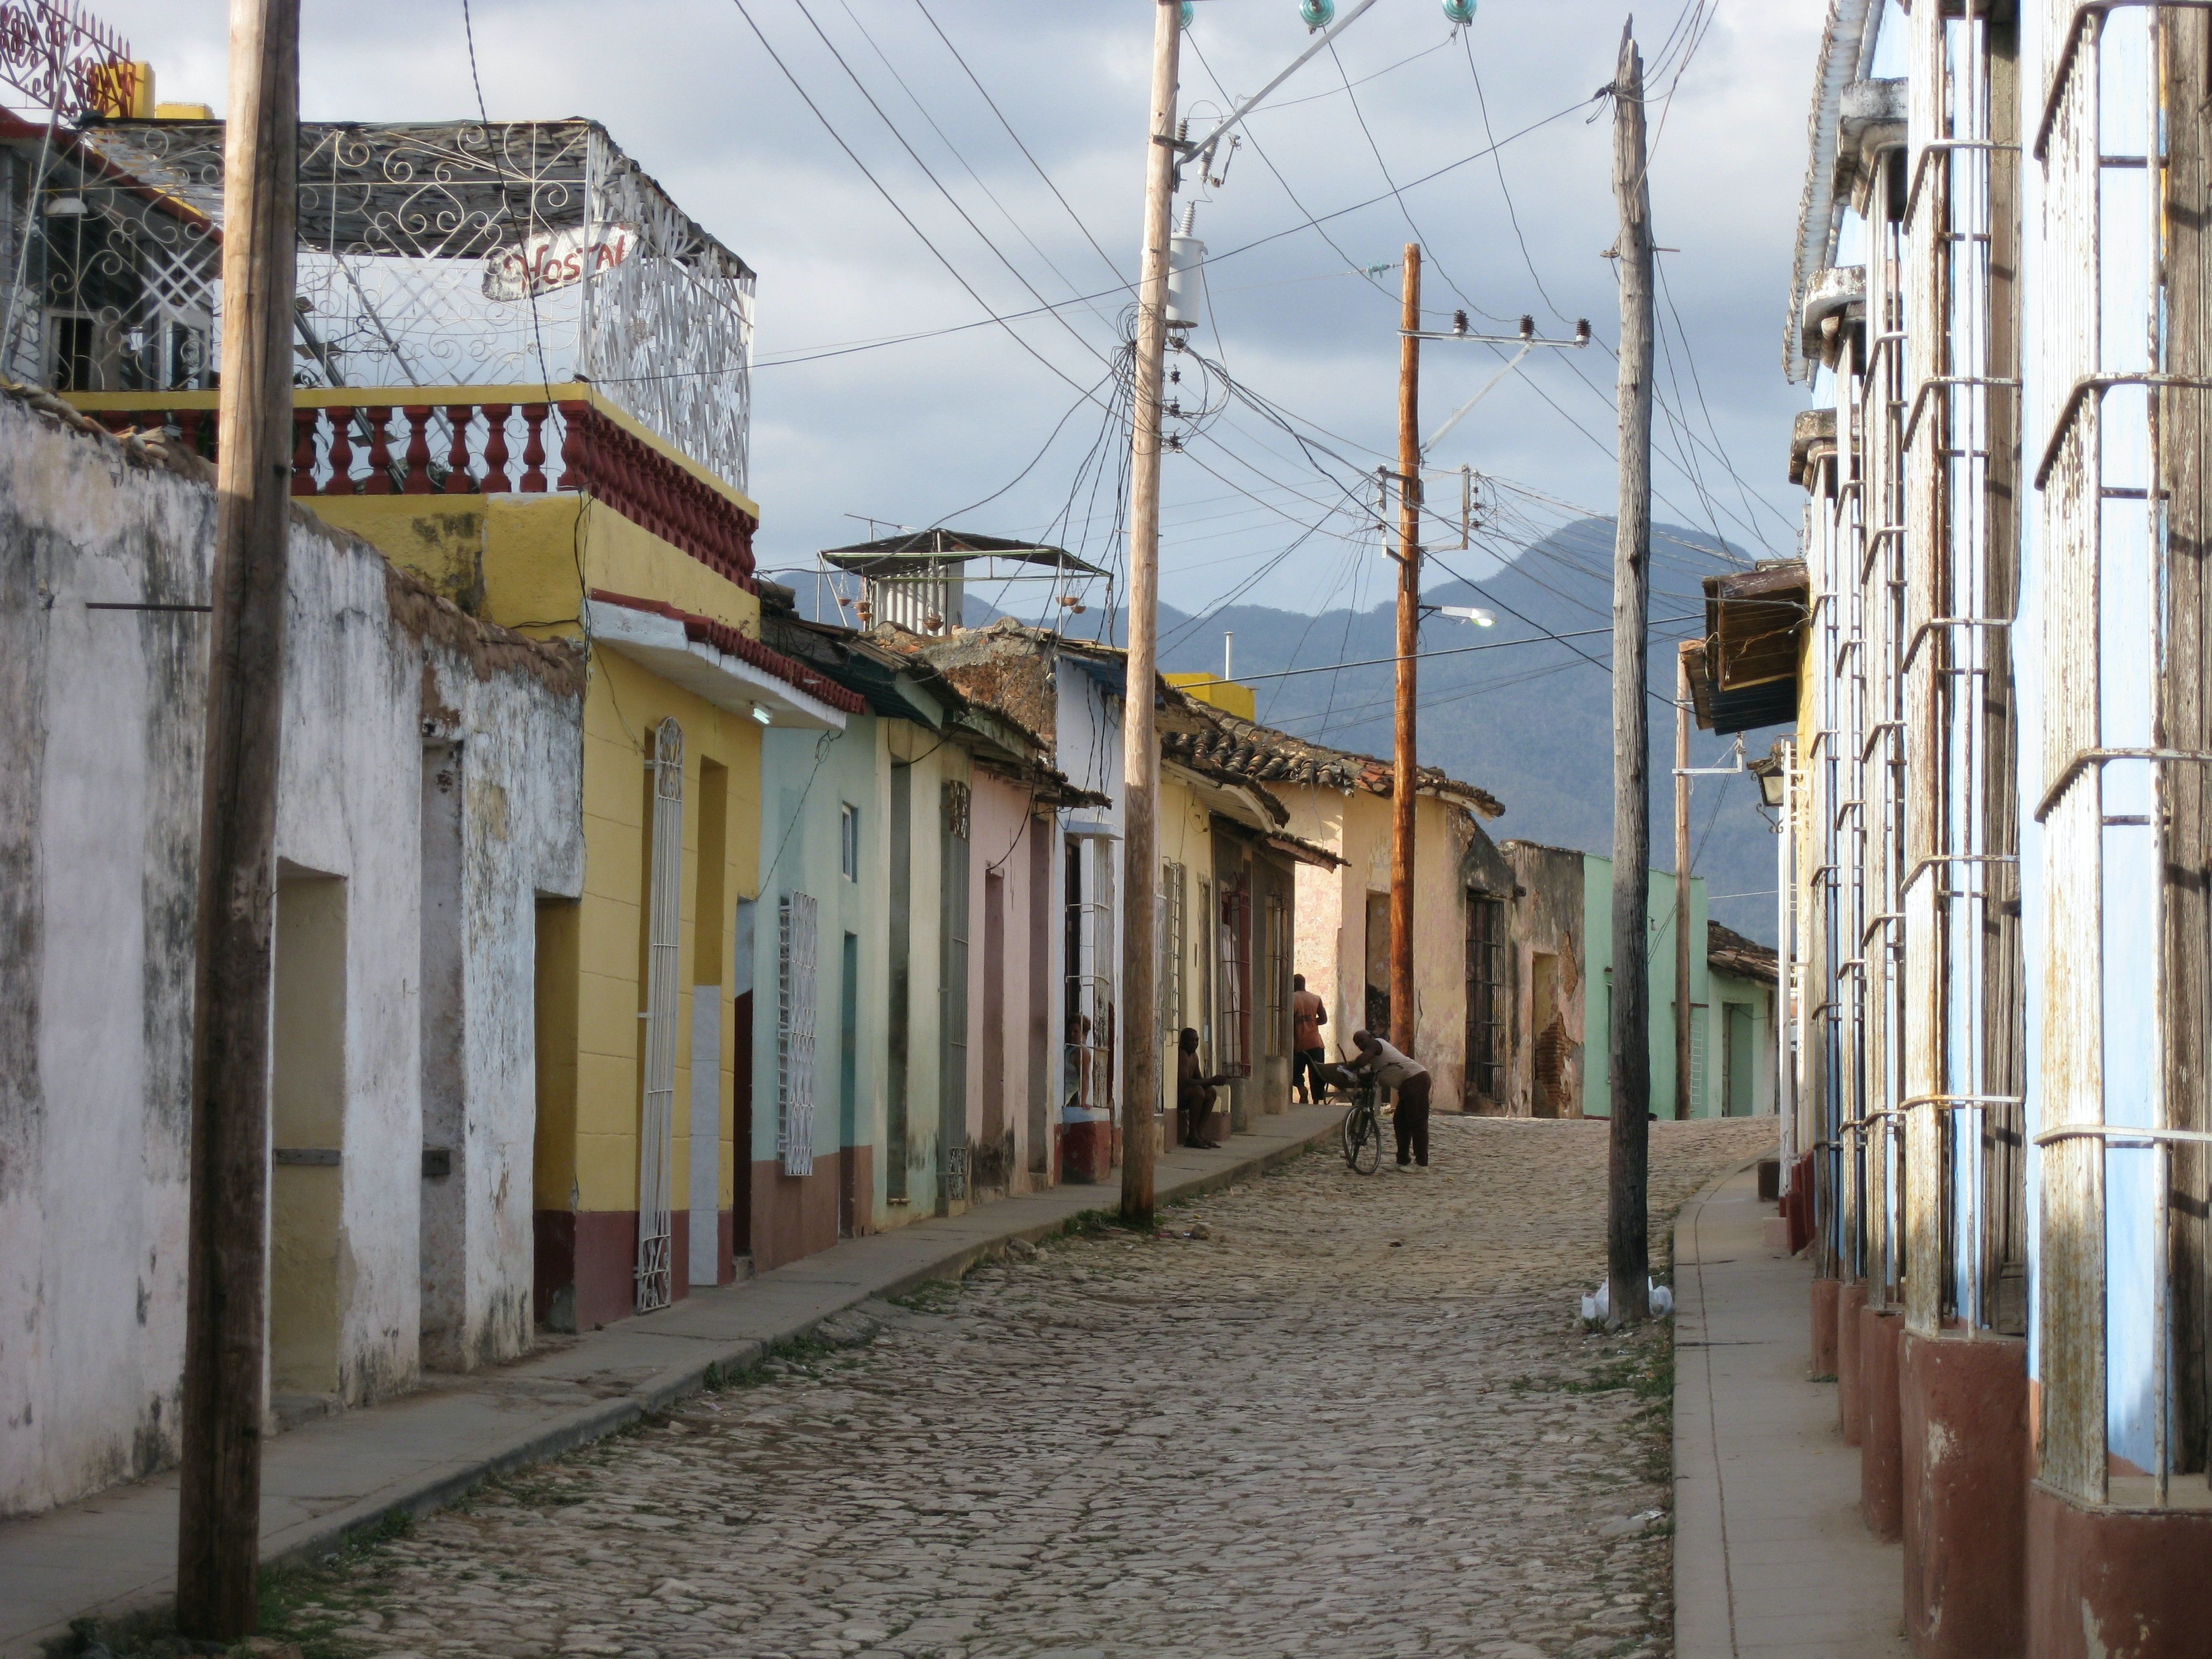 Trinidad neighborhood in Cuba